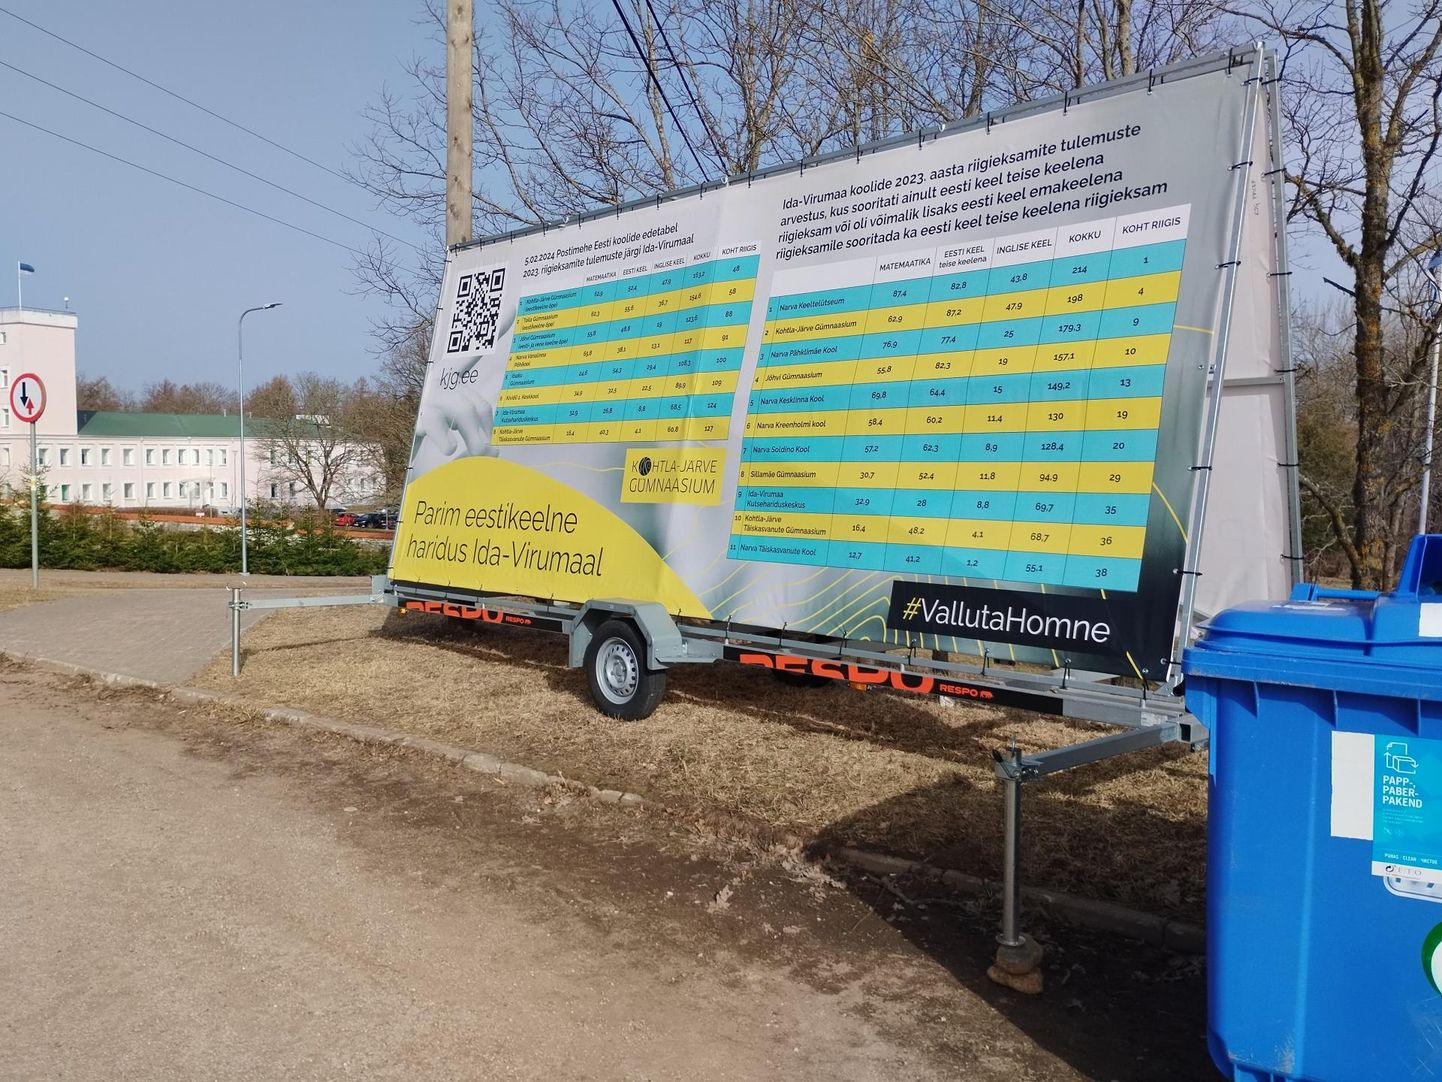 Такая реклама на колесах, восхваляющая Кохтла-Ярвескую гимназию, приветствовала вчера утром прибывших в Тойласкую гимназию (в отдалении слева) учеников и учителей.